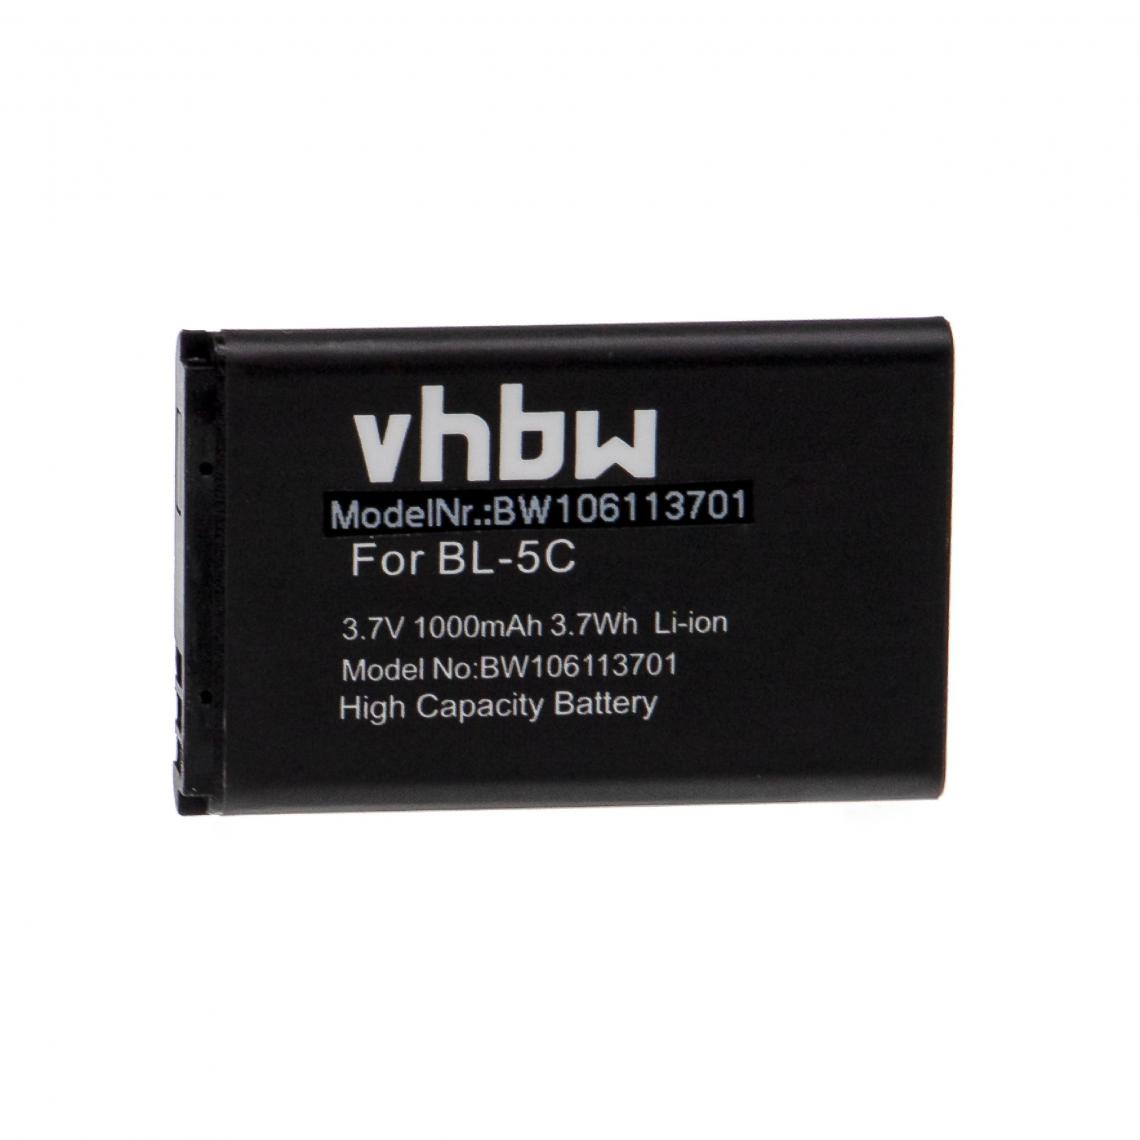 Vhbw - vhbw Batterie remplacement pour Nec Q24-FR000000113082 pour smartphone (1000mAh, 3,7V, Li-ion) - Batterie téléphone